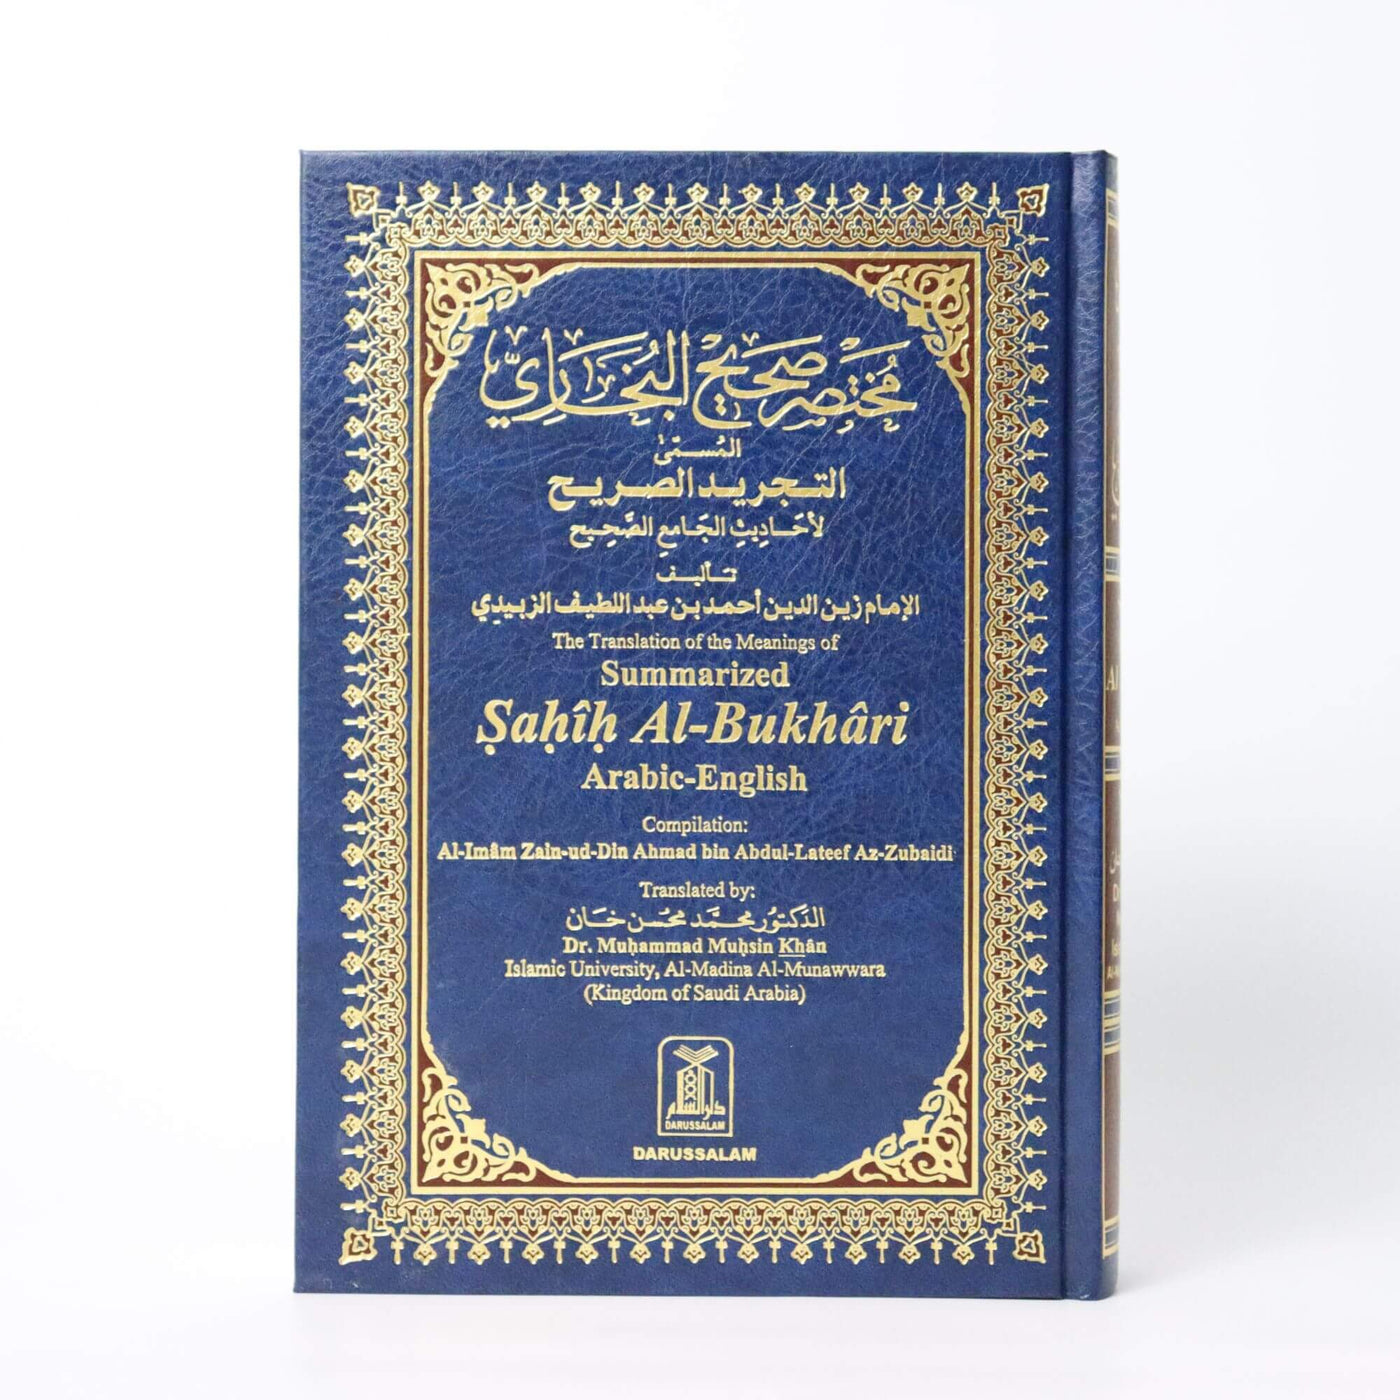 Sahih Al-Bukhari Arabic-English